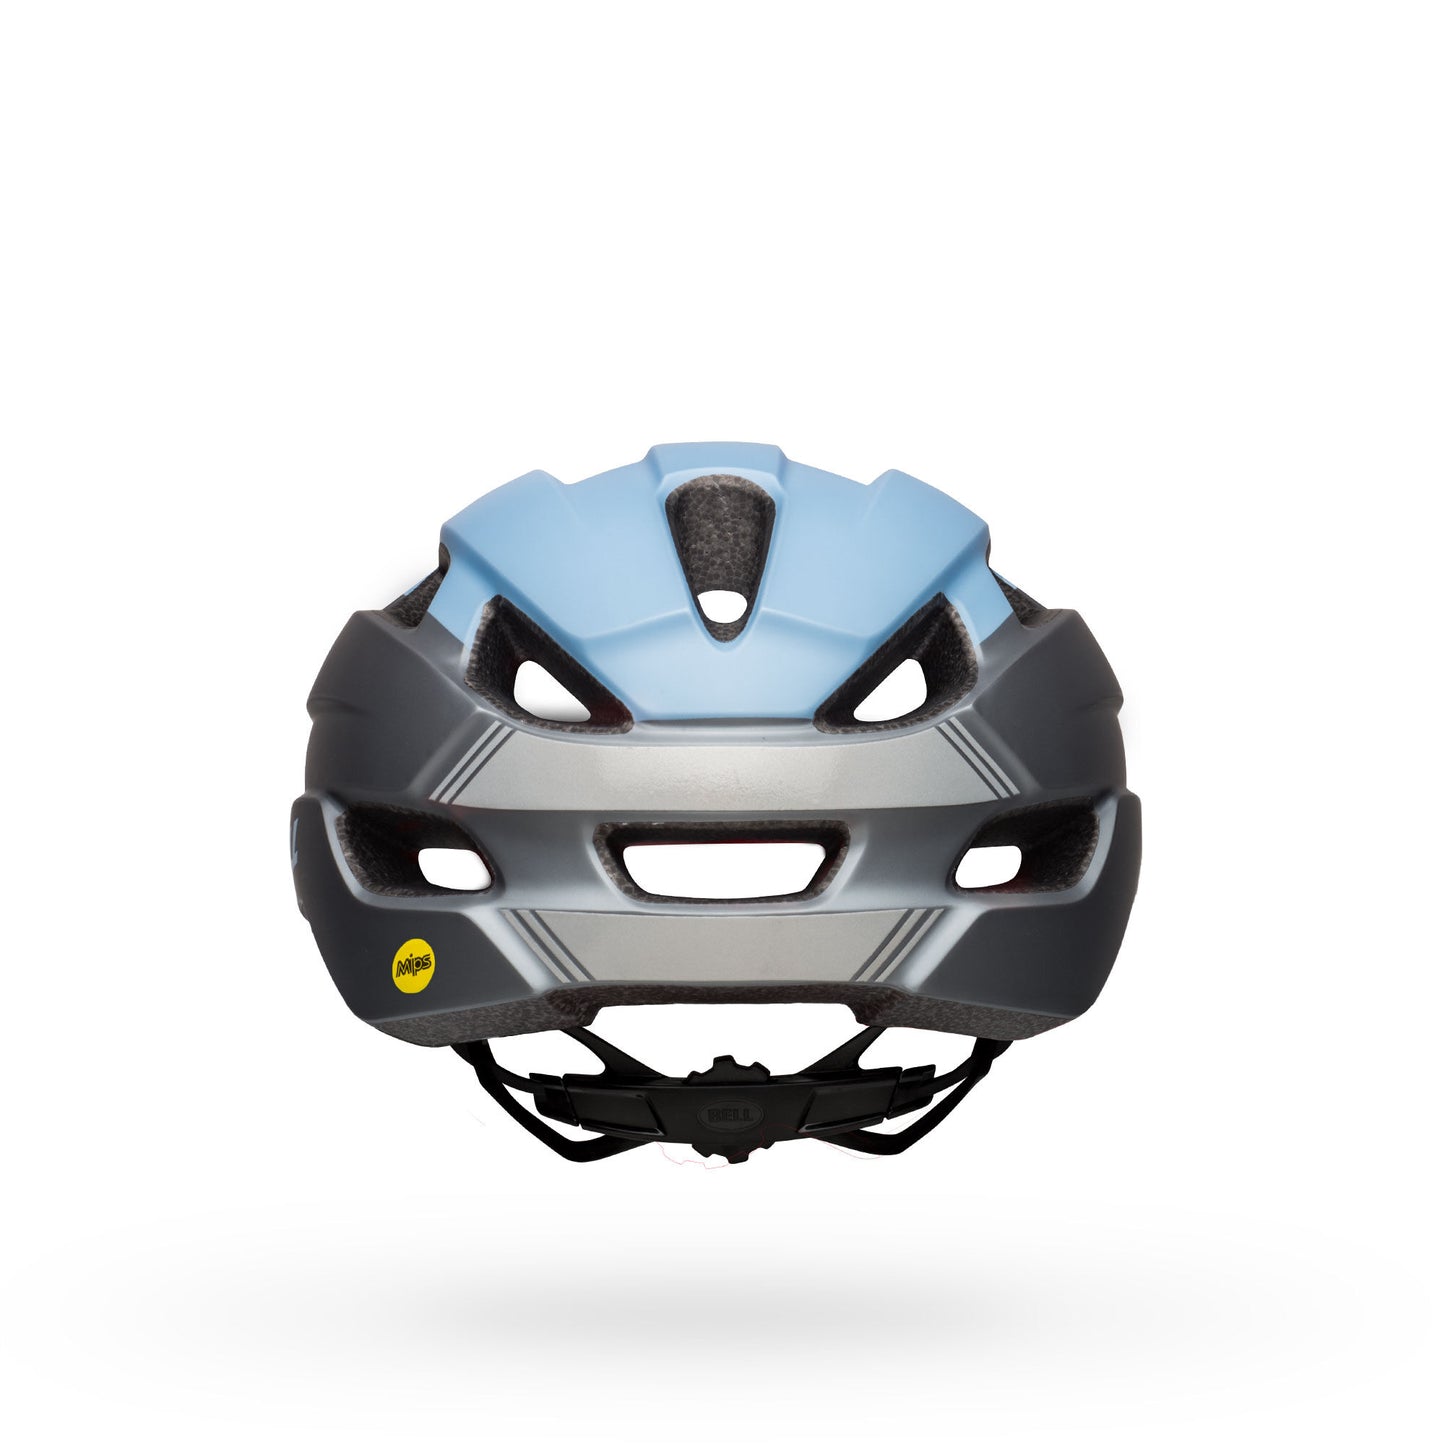 Bell Trace MIPS Helmet Matte Blue/Gray Bike Helmets